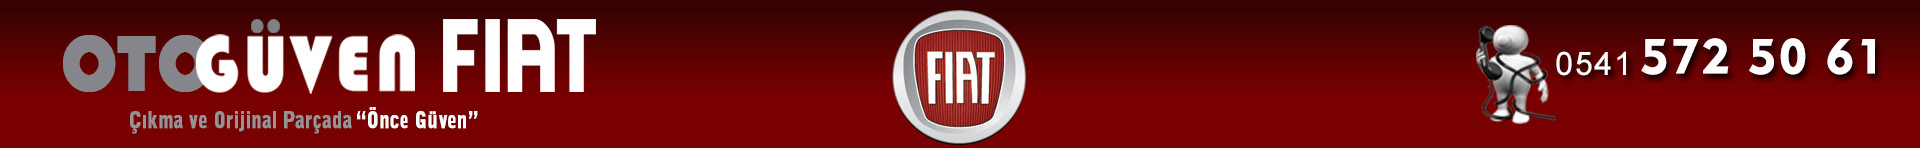 Guven Fiat